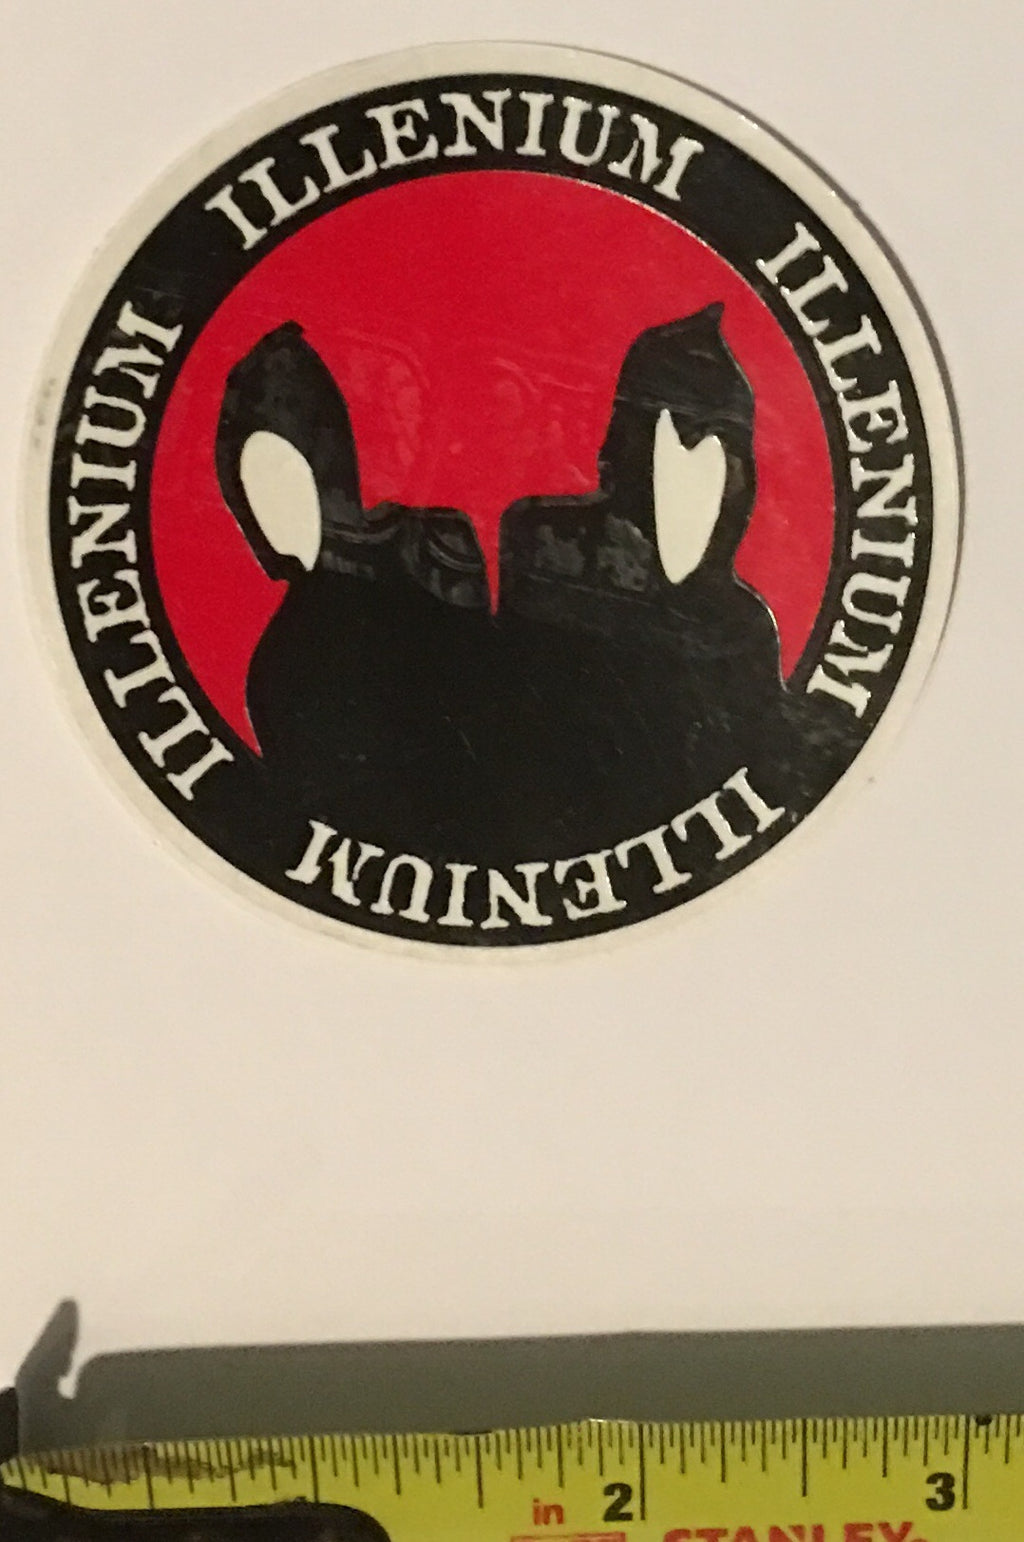 Illenium Round Hoods sticker